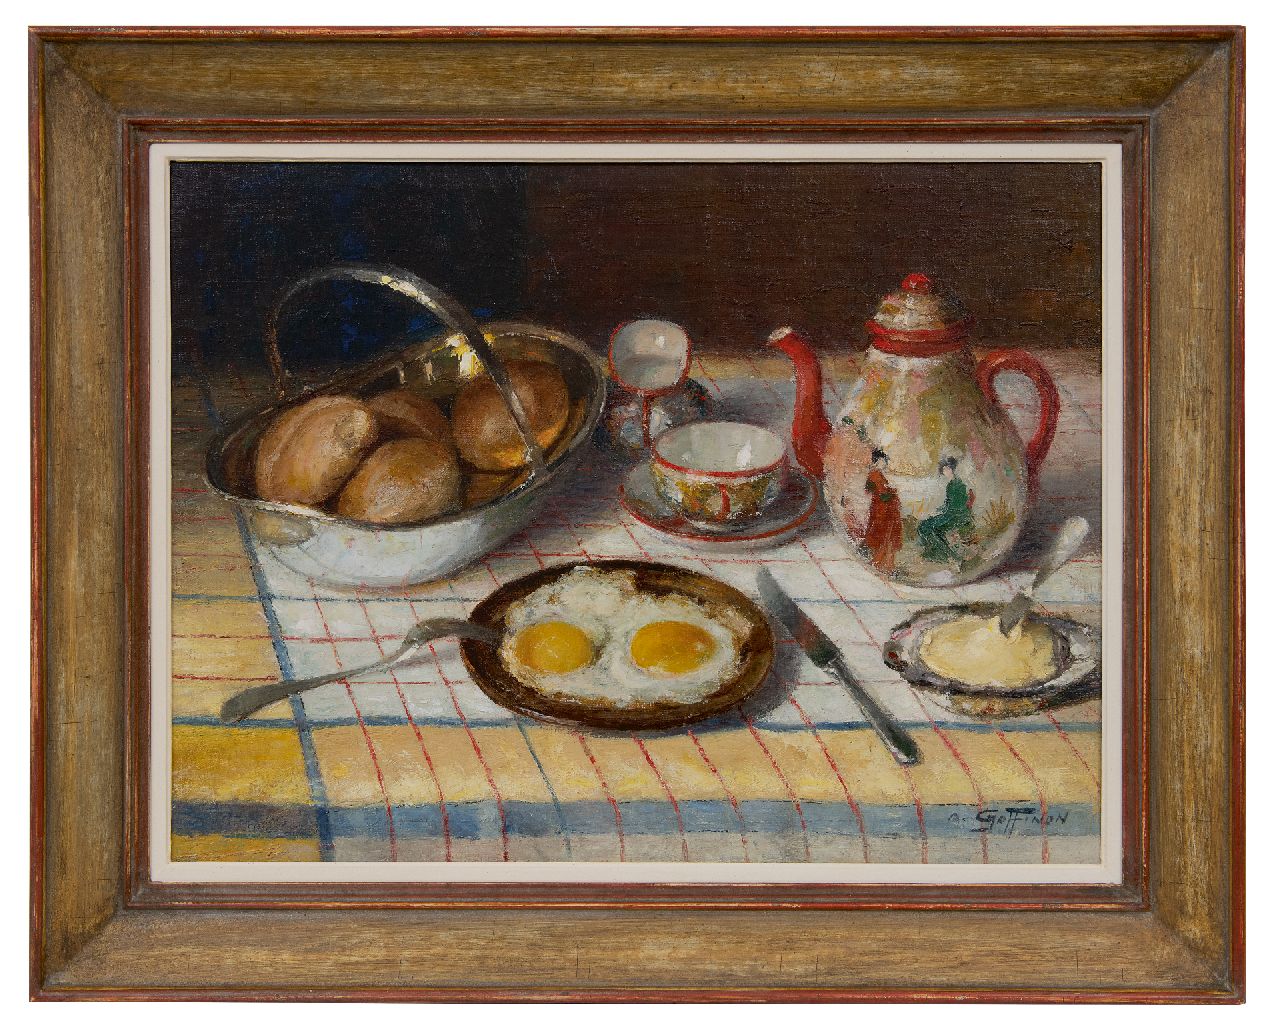 Goffinon A.  | Aristide Goffinon, Frühstücksstillleben, Öl auf Leinwand 45,3 x 60,3 cm, Unterzeichnet u.r.